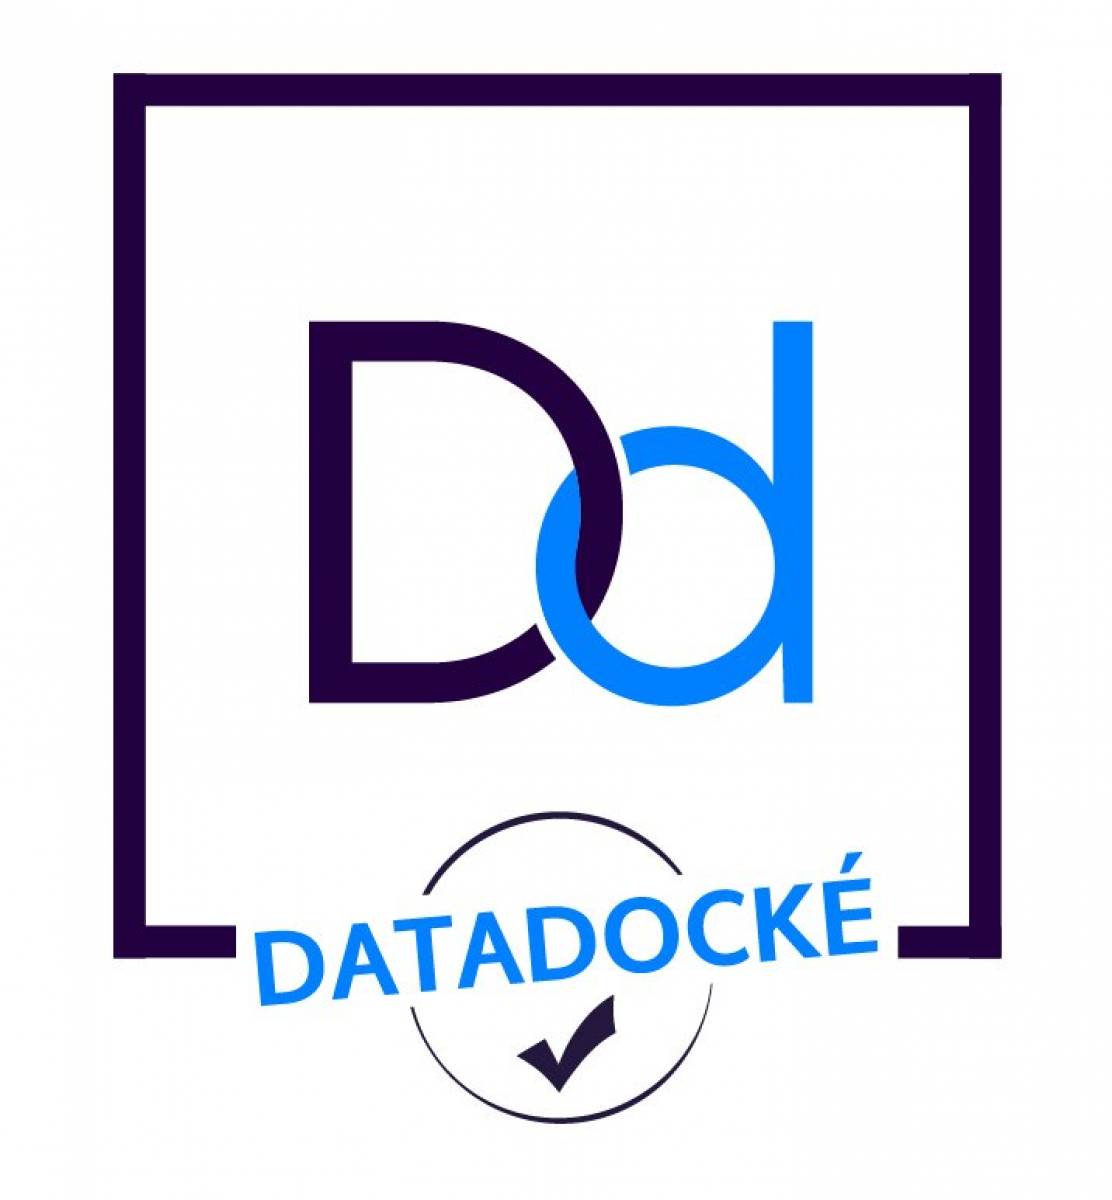 Datadocks